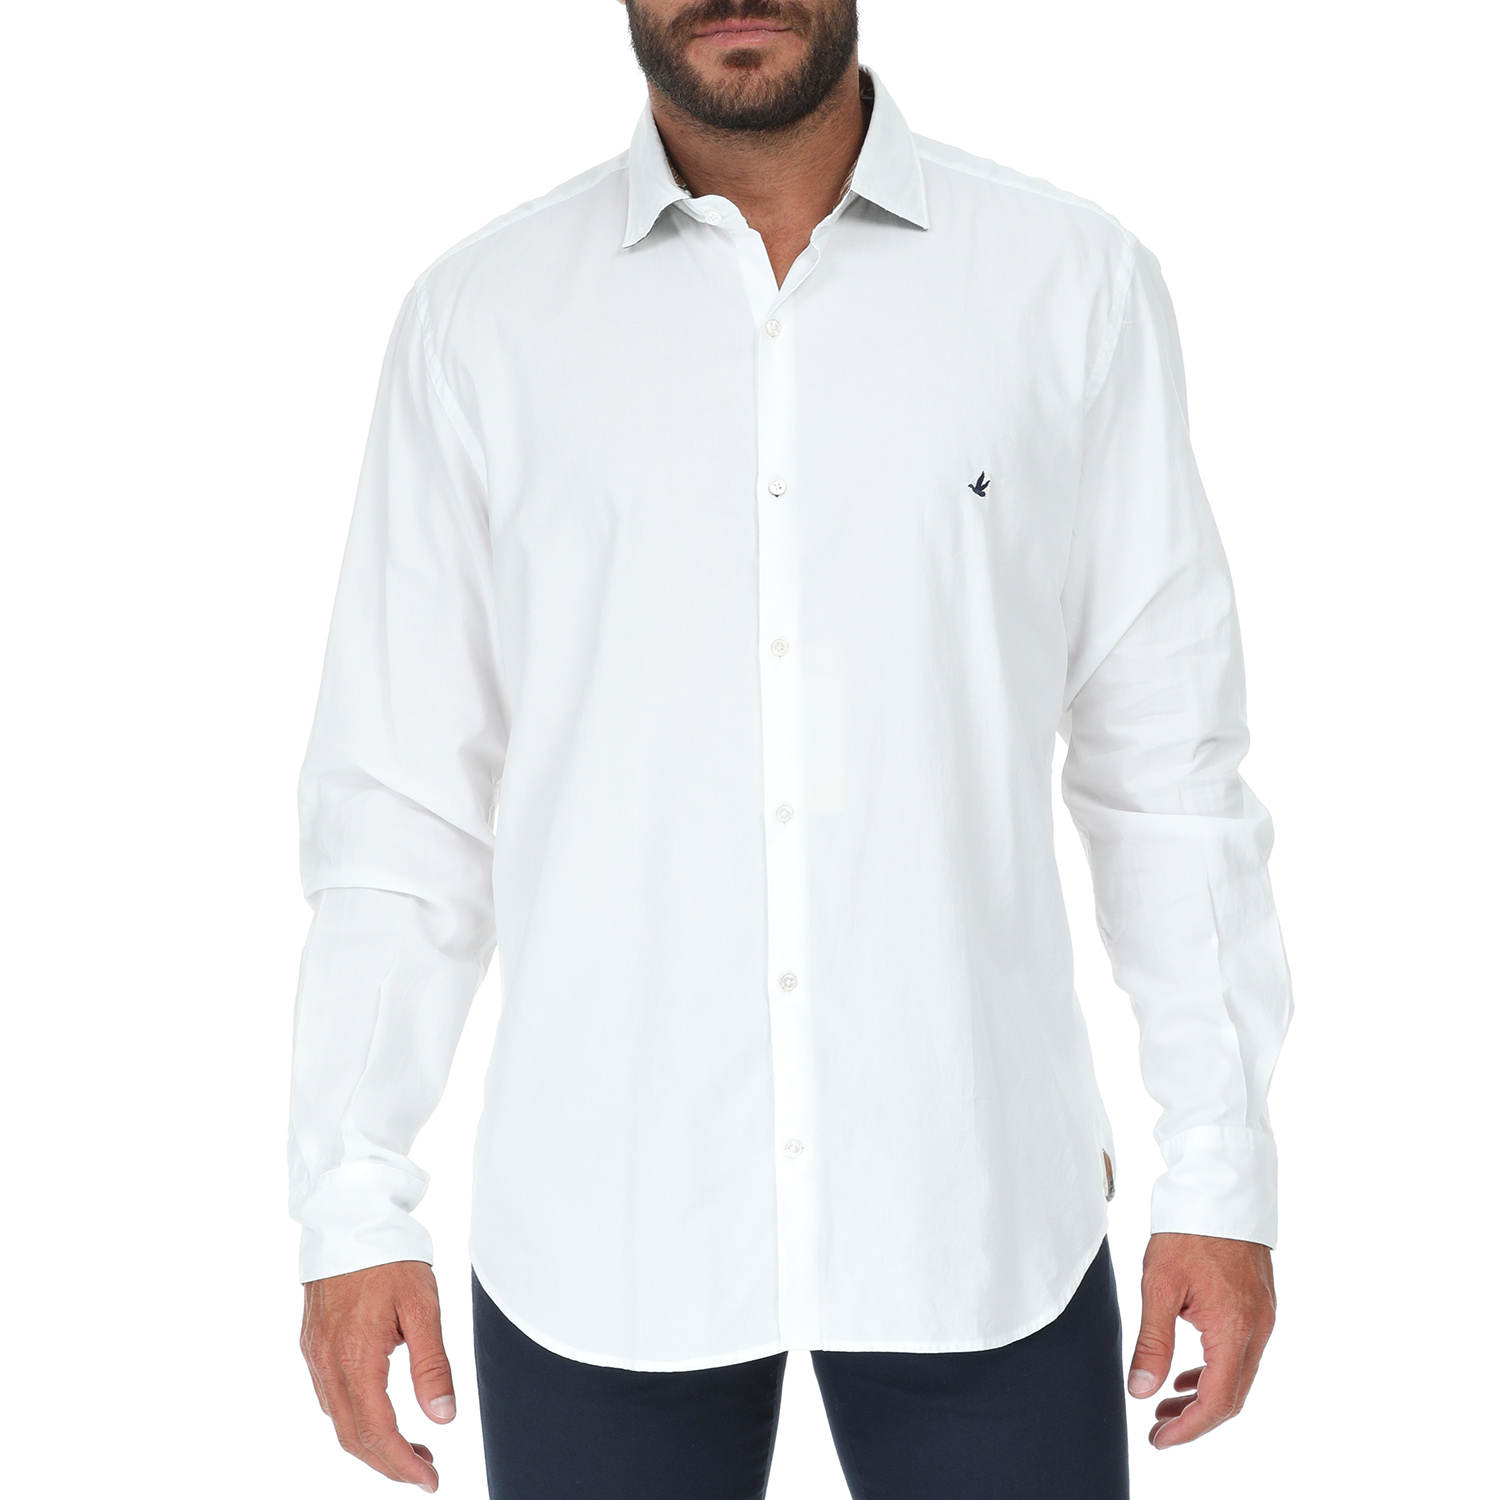 Ανδρικά/Ρούχα/Πουκάμισα/Μακρυμάνικα BROOKSFIELD - Ανδρικό πουκάμισο BROOKSFIELD SLIM FIT λευκό